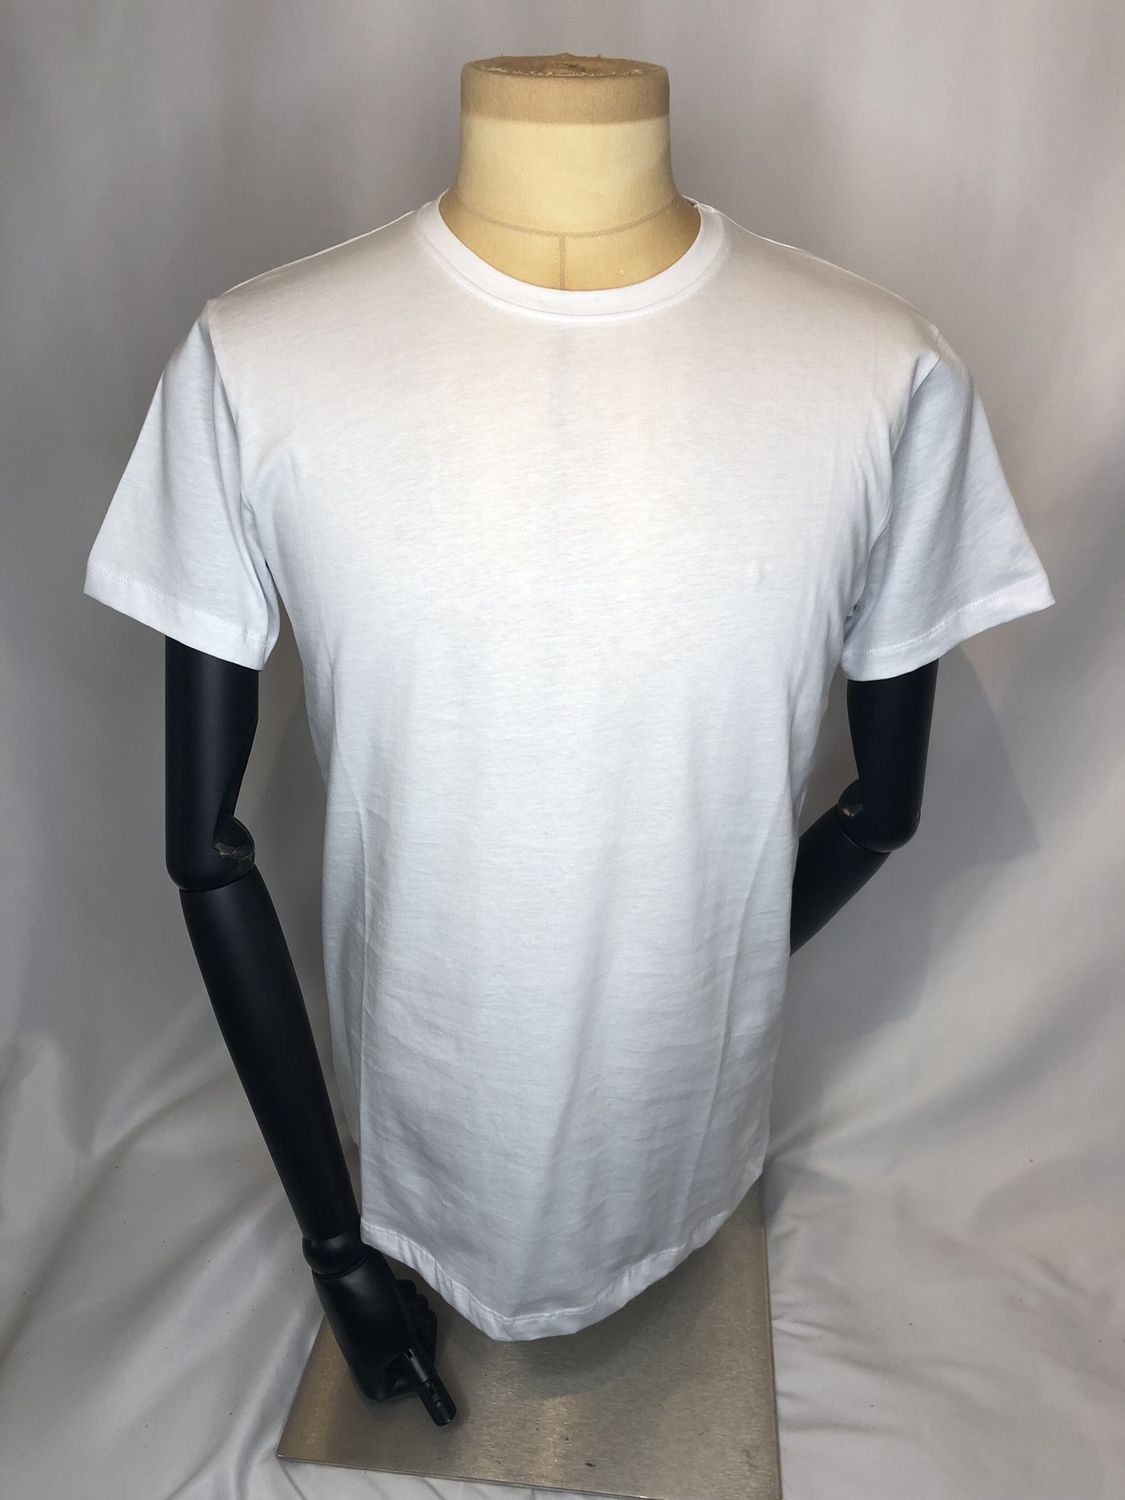 100% Cotton elasticated t-shirt, Colour: White, SIZE: M